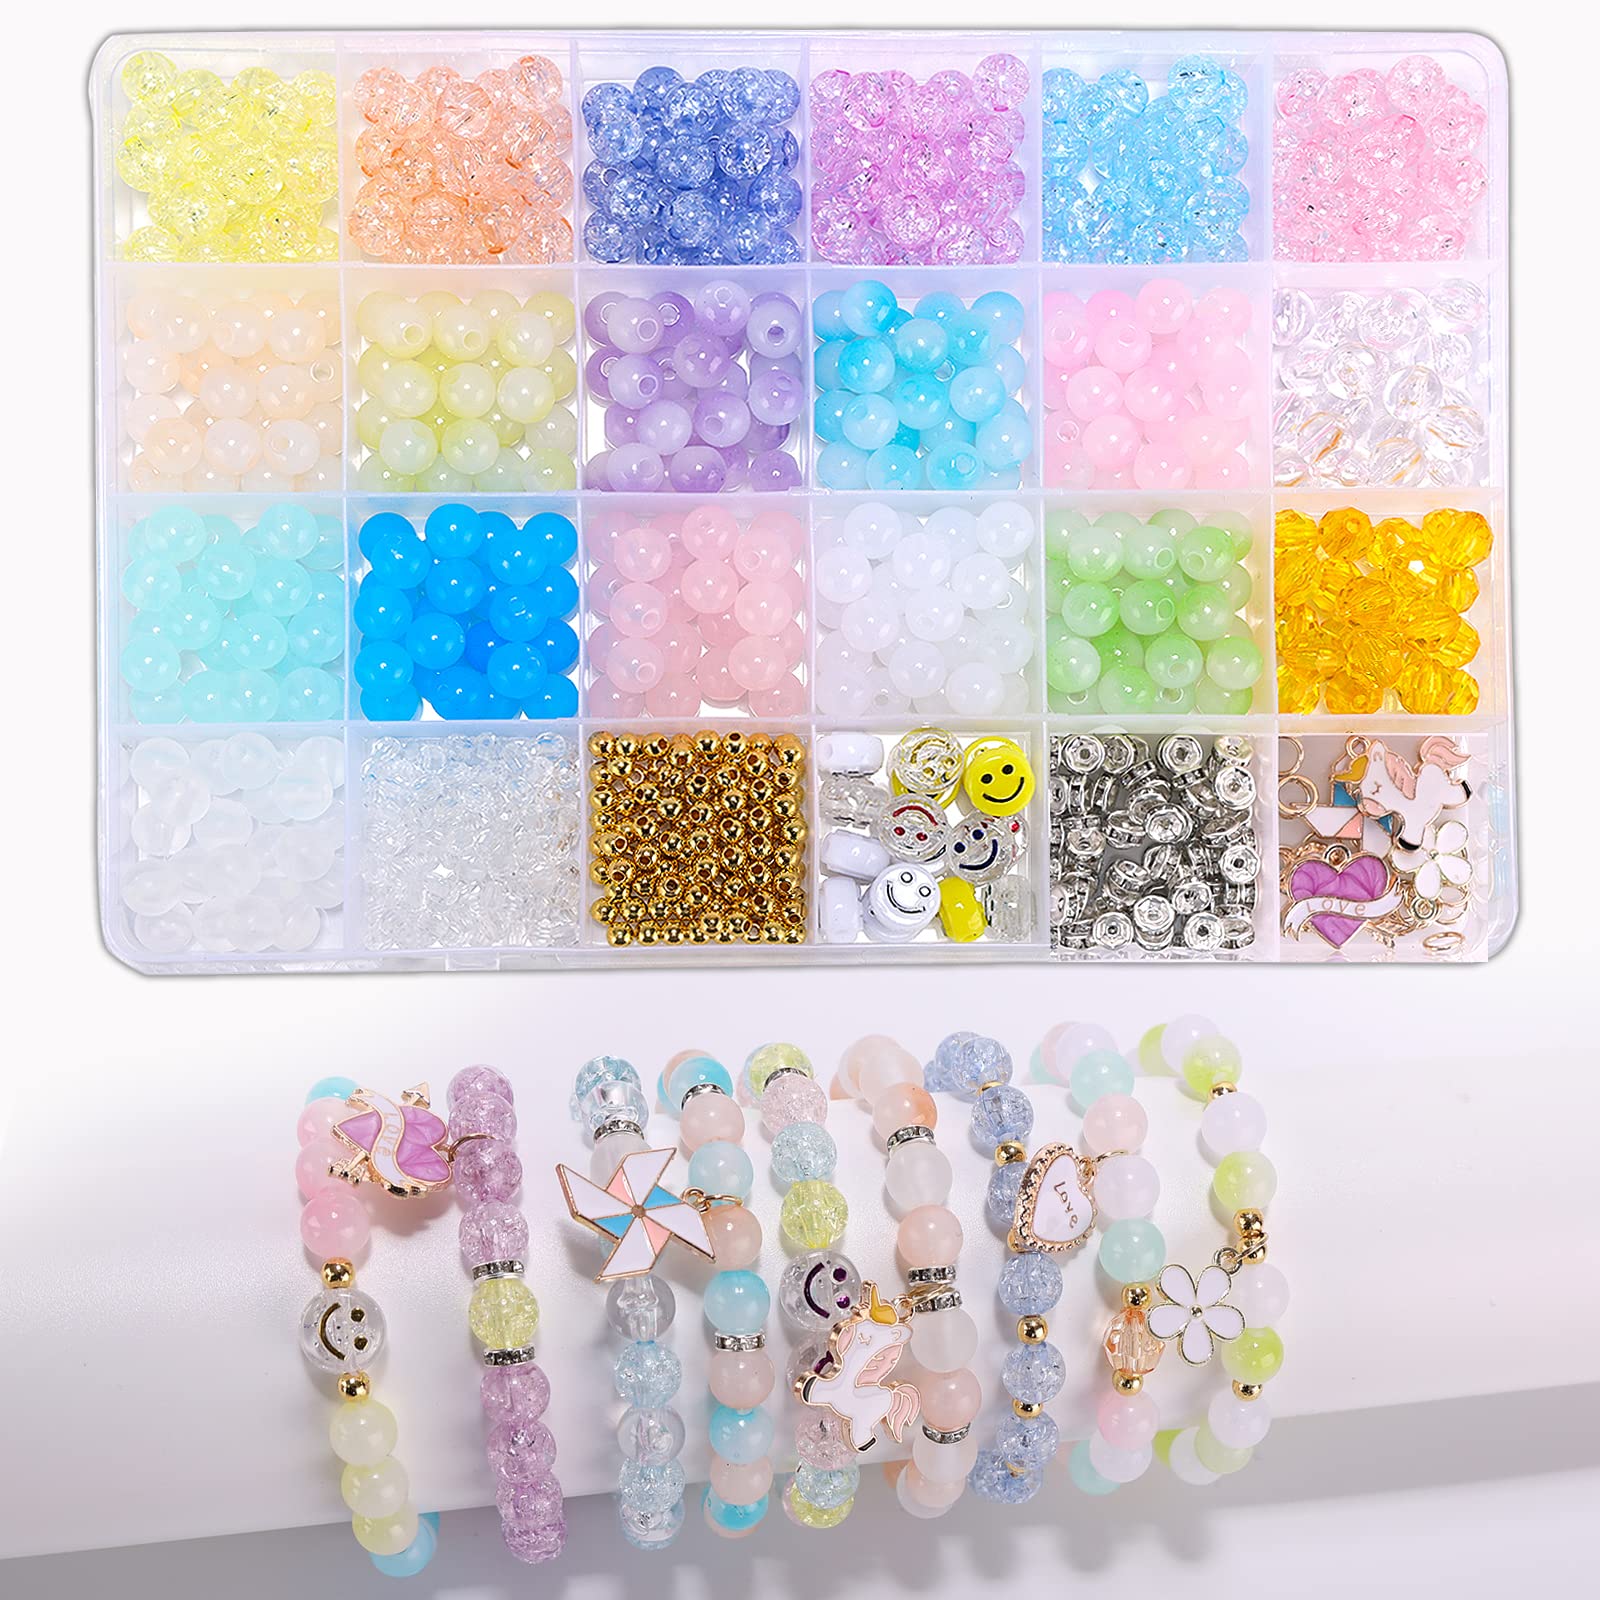 Enjoymade Transparent Color Glass Beads Bracelet Making Kit Girls